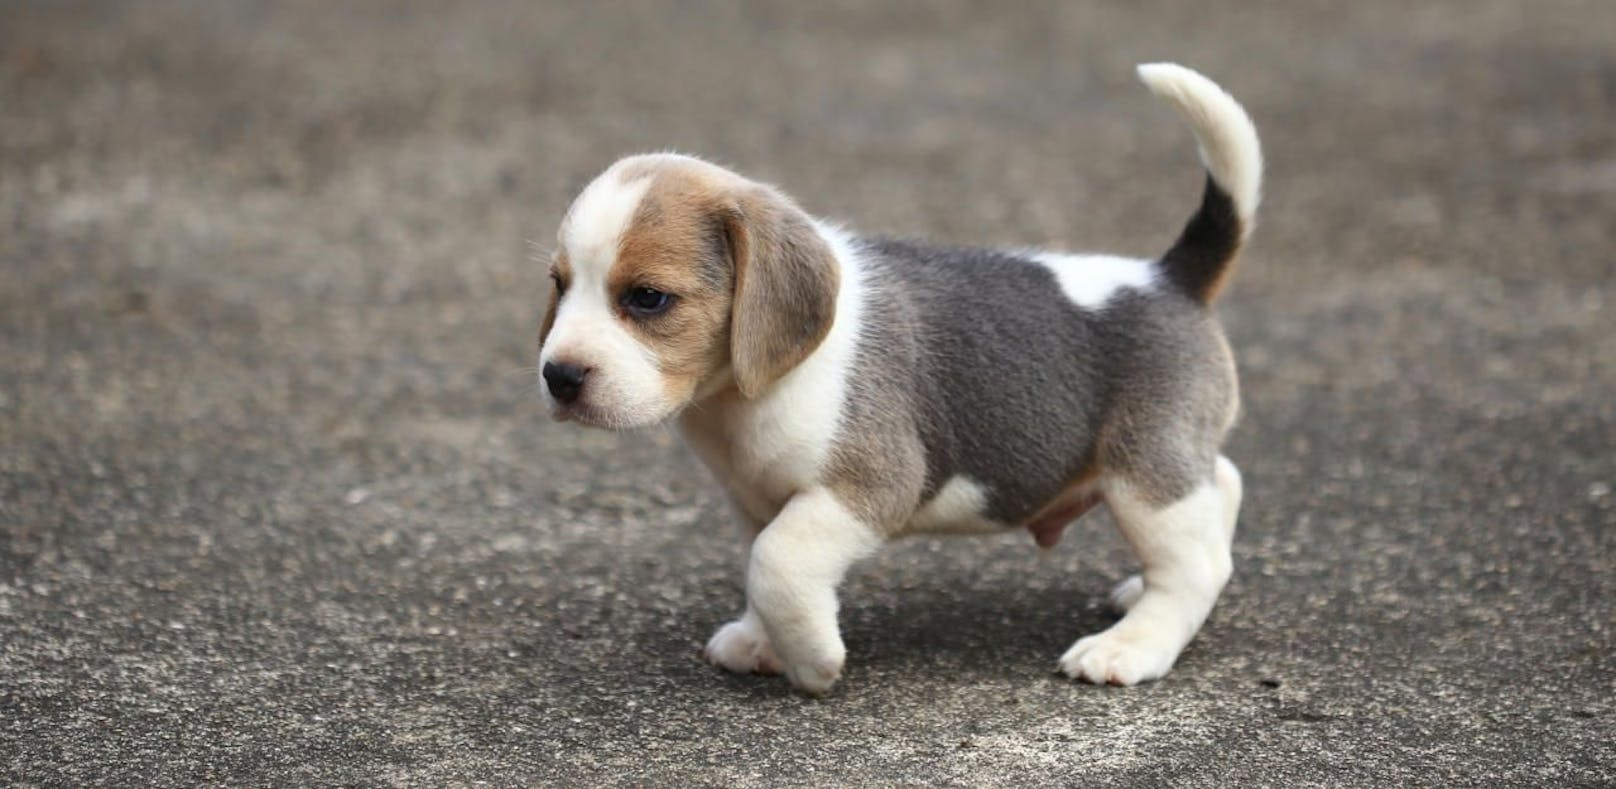 Symbolfoto eines kleinen Beagles